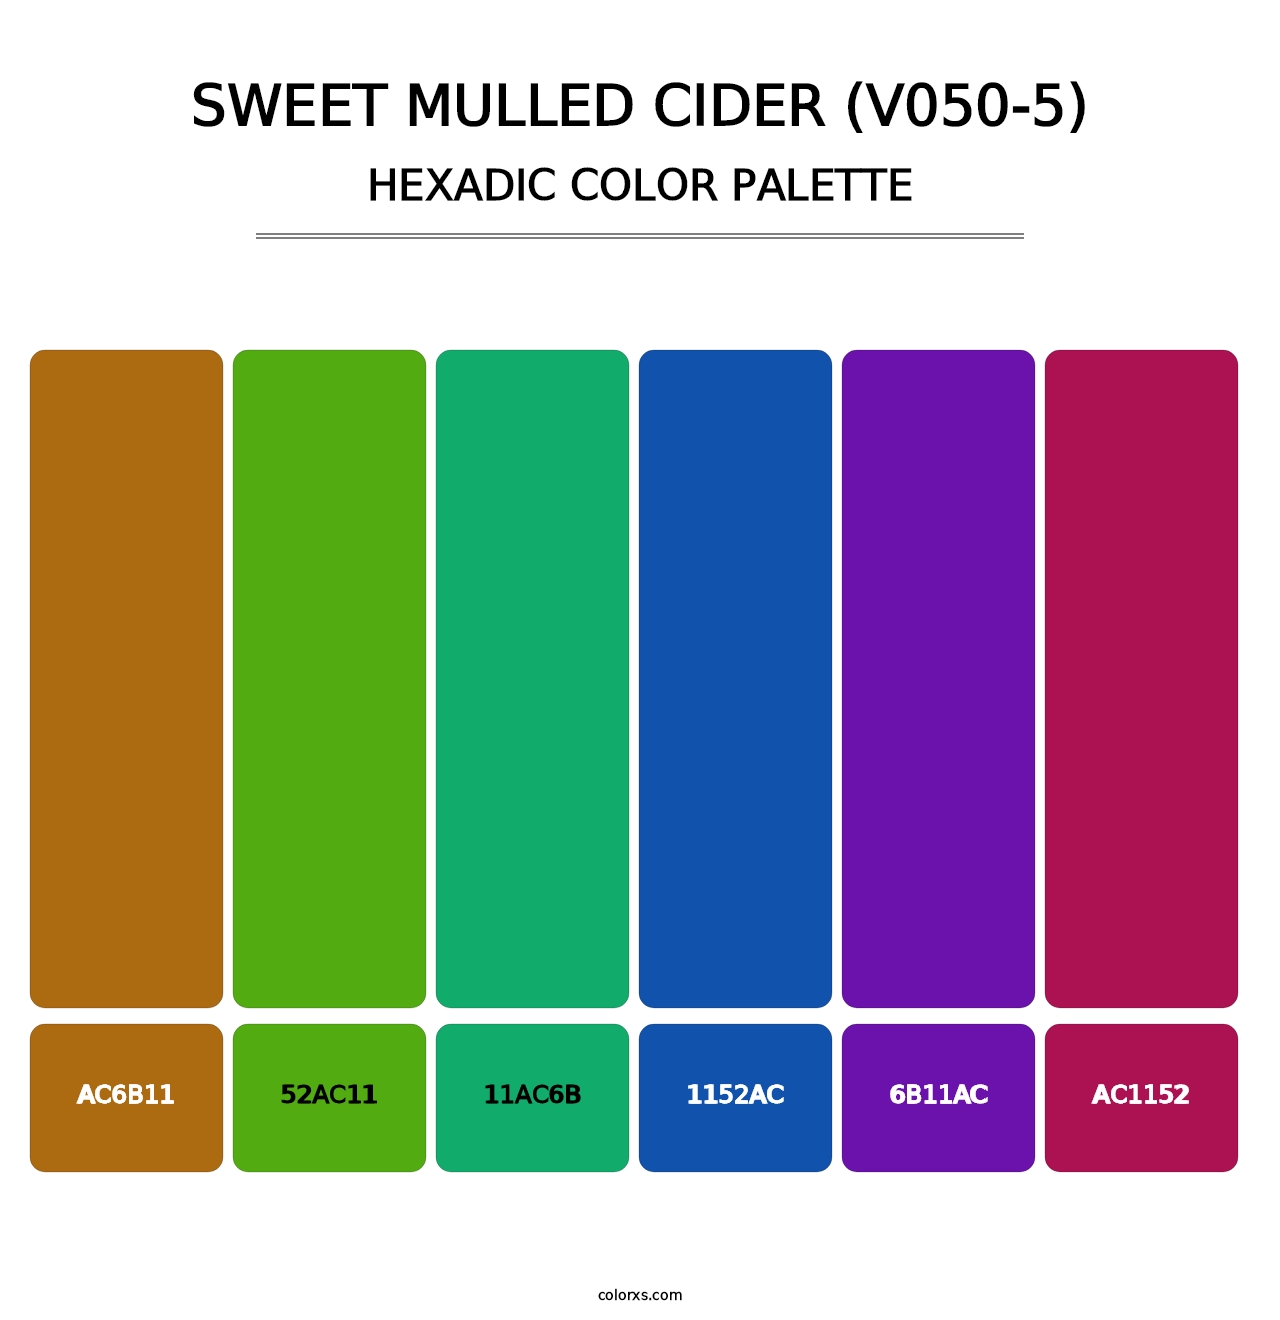 Sweet Mulled Cider (V050-5) - Hexadic Color Palette